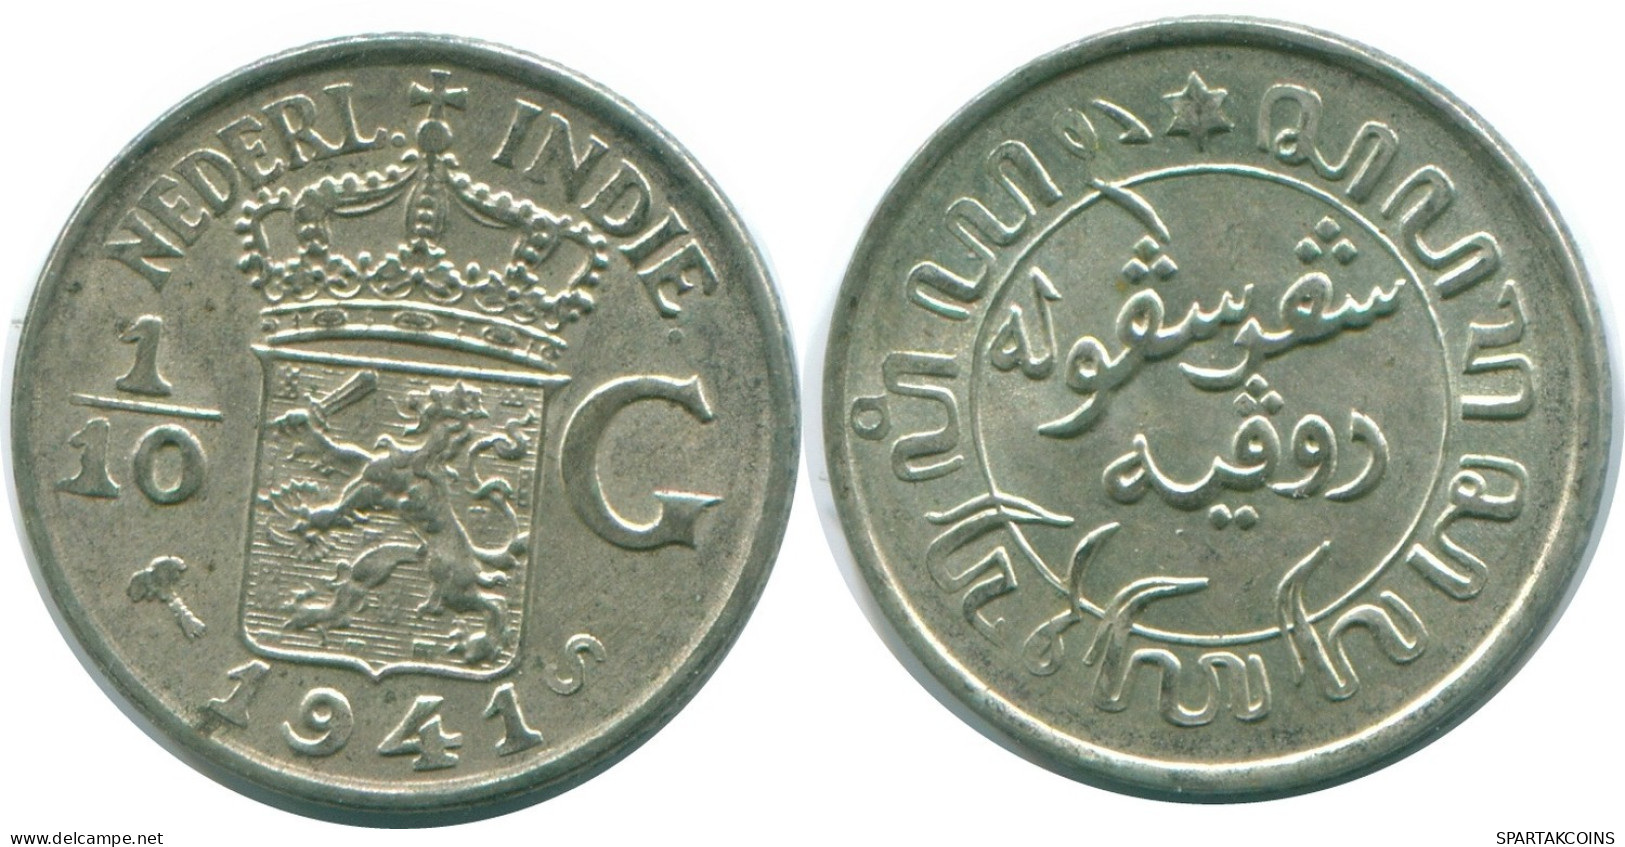 1/10 GULDEN 1941 S NETHERLANDS EAST INDIES SILVER Colonial Coin #NL13668.3.U.A - Niederländisch-Indien